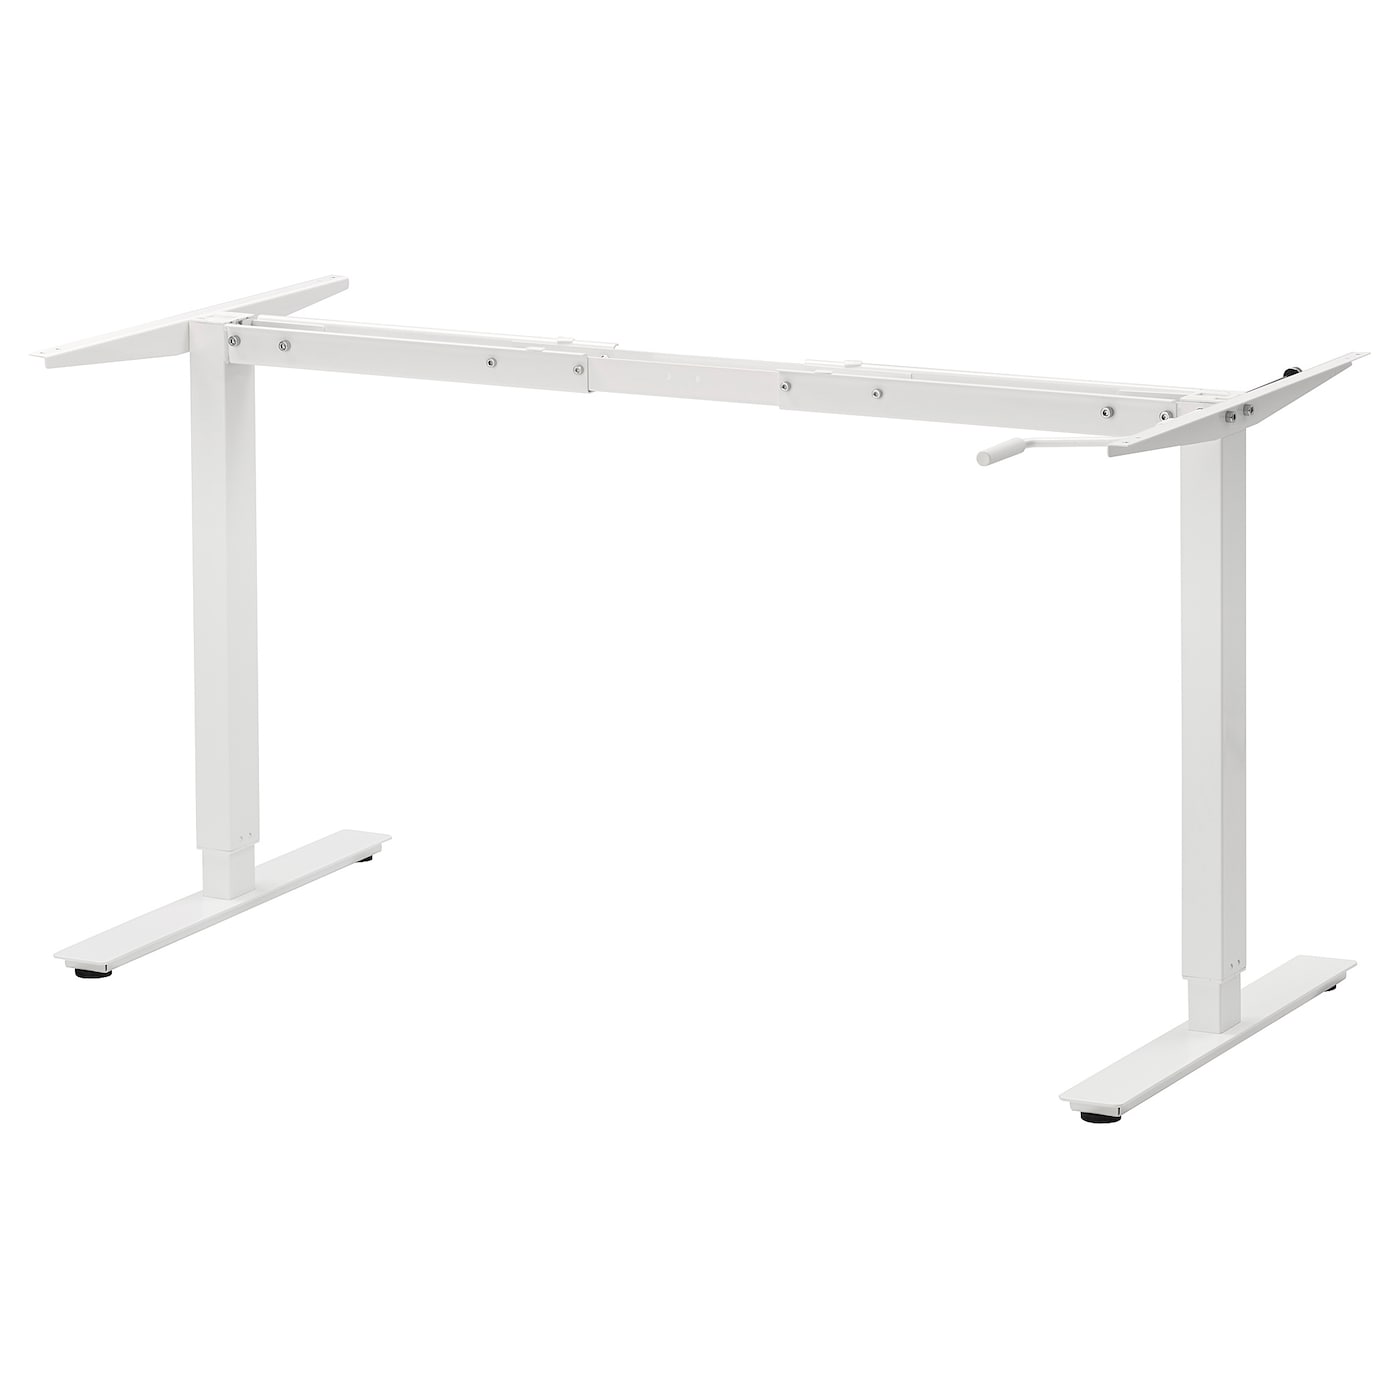 Каркас стола - IKEA TROTTEN, 120/70x160/120см, белый, ТРОТТЕН ИКЕА